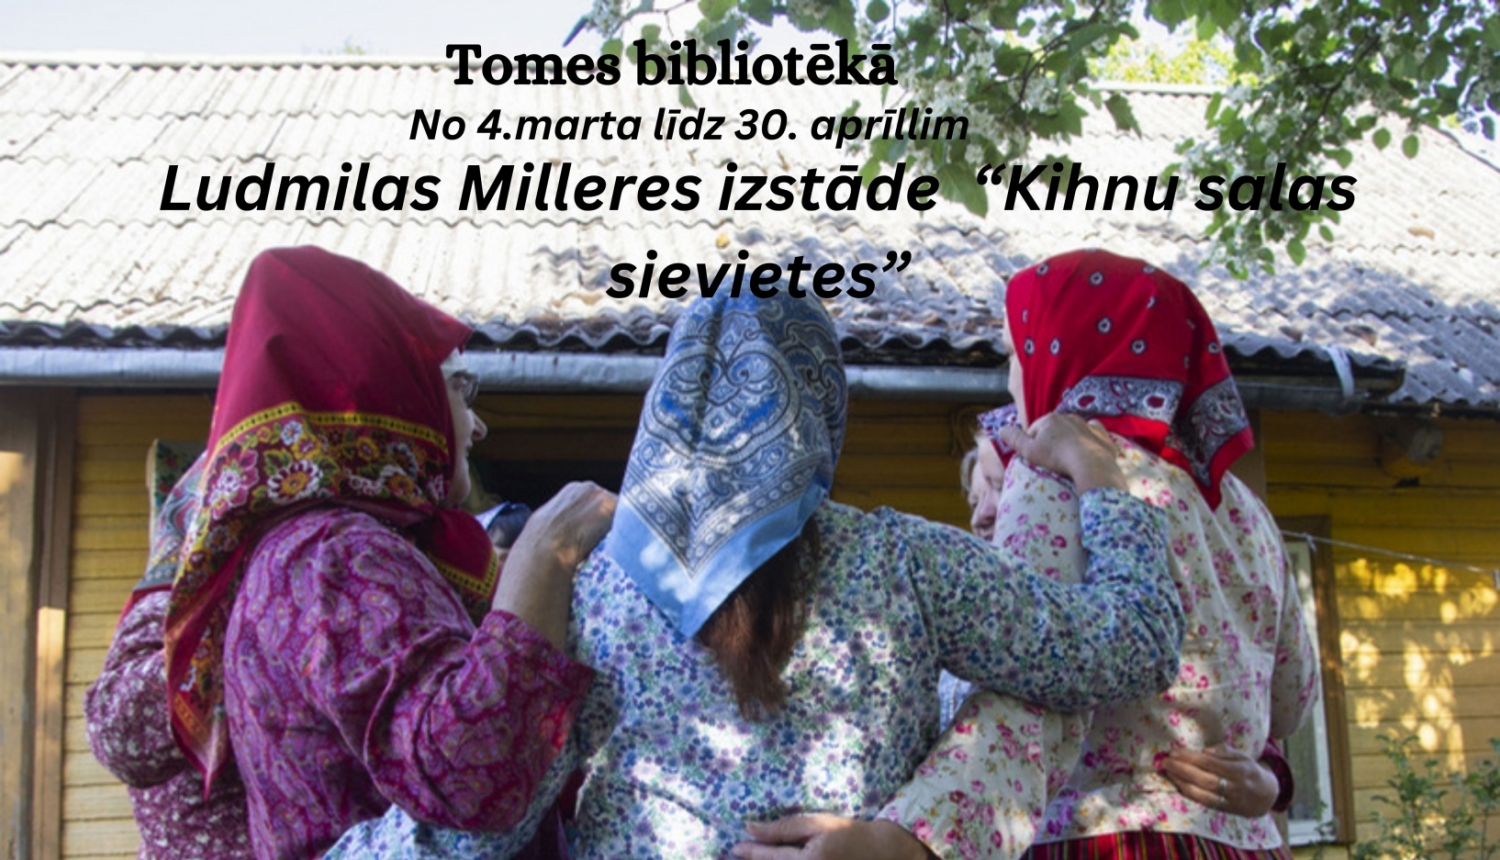 Sievietes tautastērpos uz afišas Ludmilas Milleres izstādei "Kihnu salas sievietes" Tomes bibliotēkā